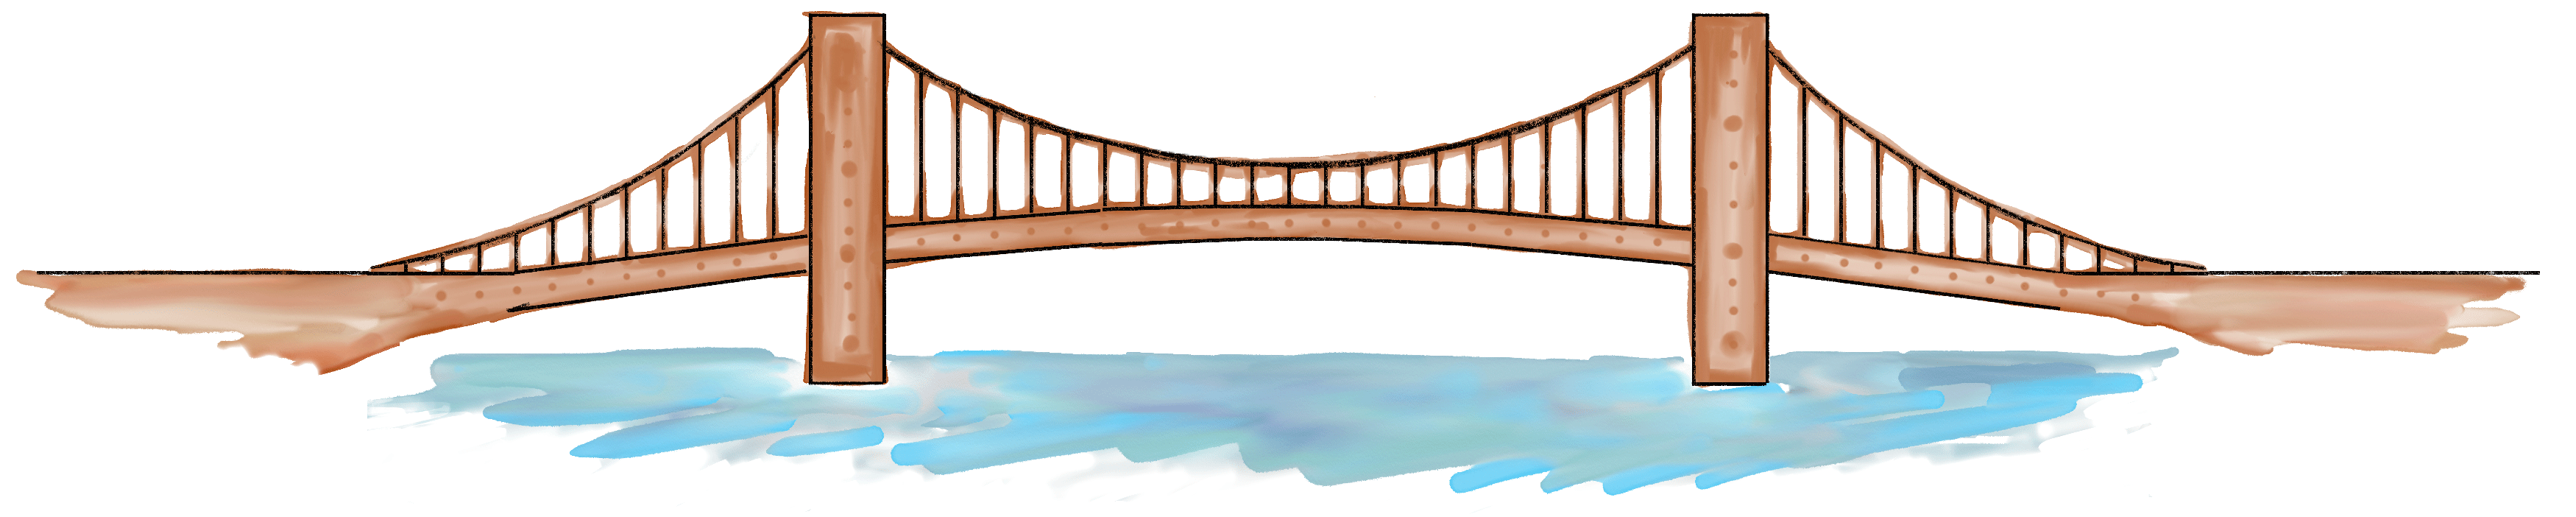 Bridge PNG image free Download 